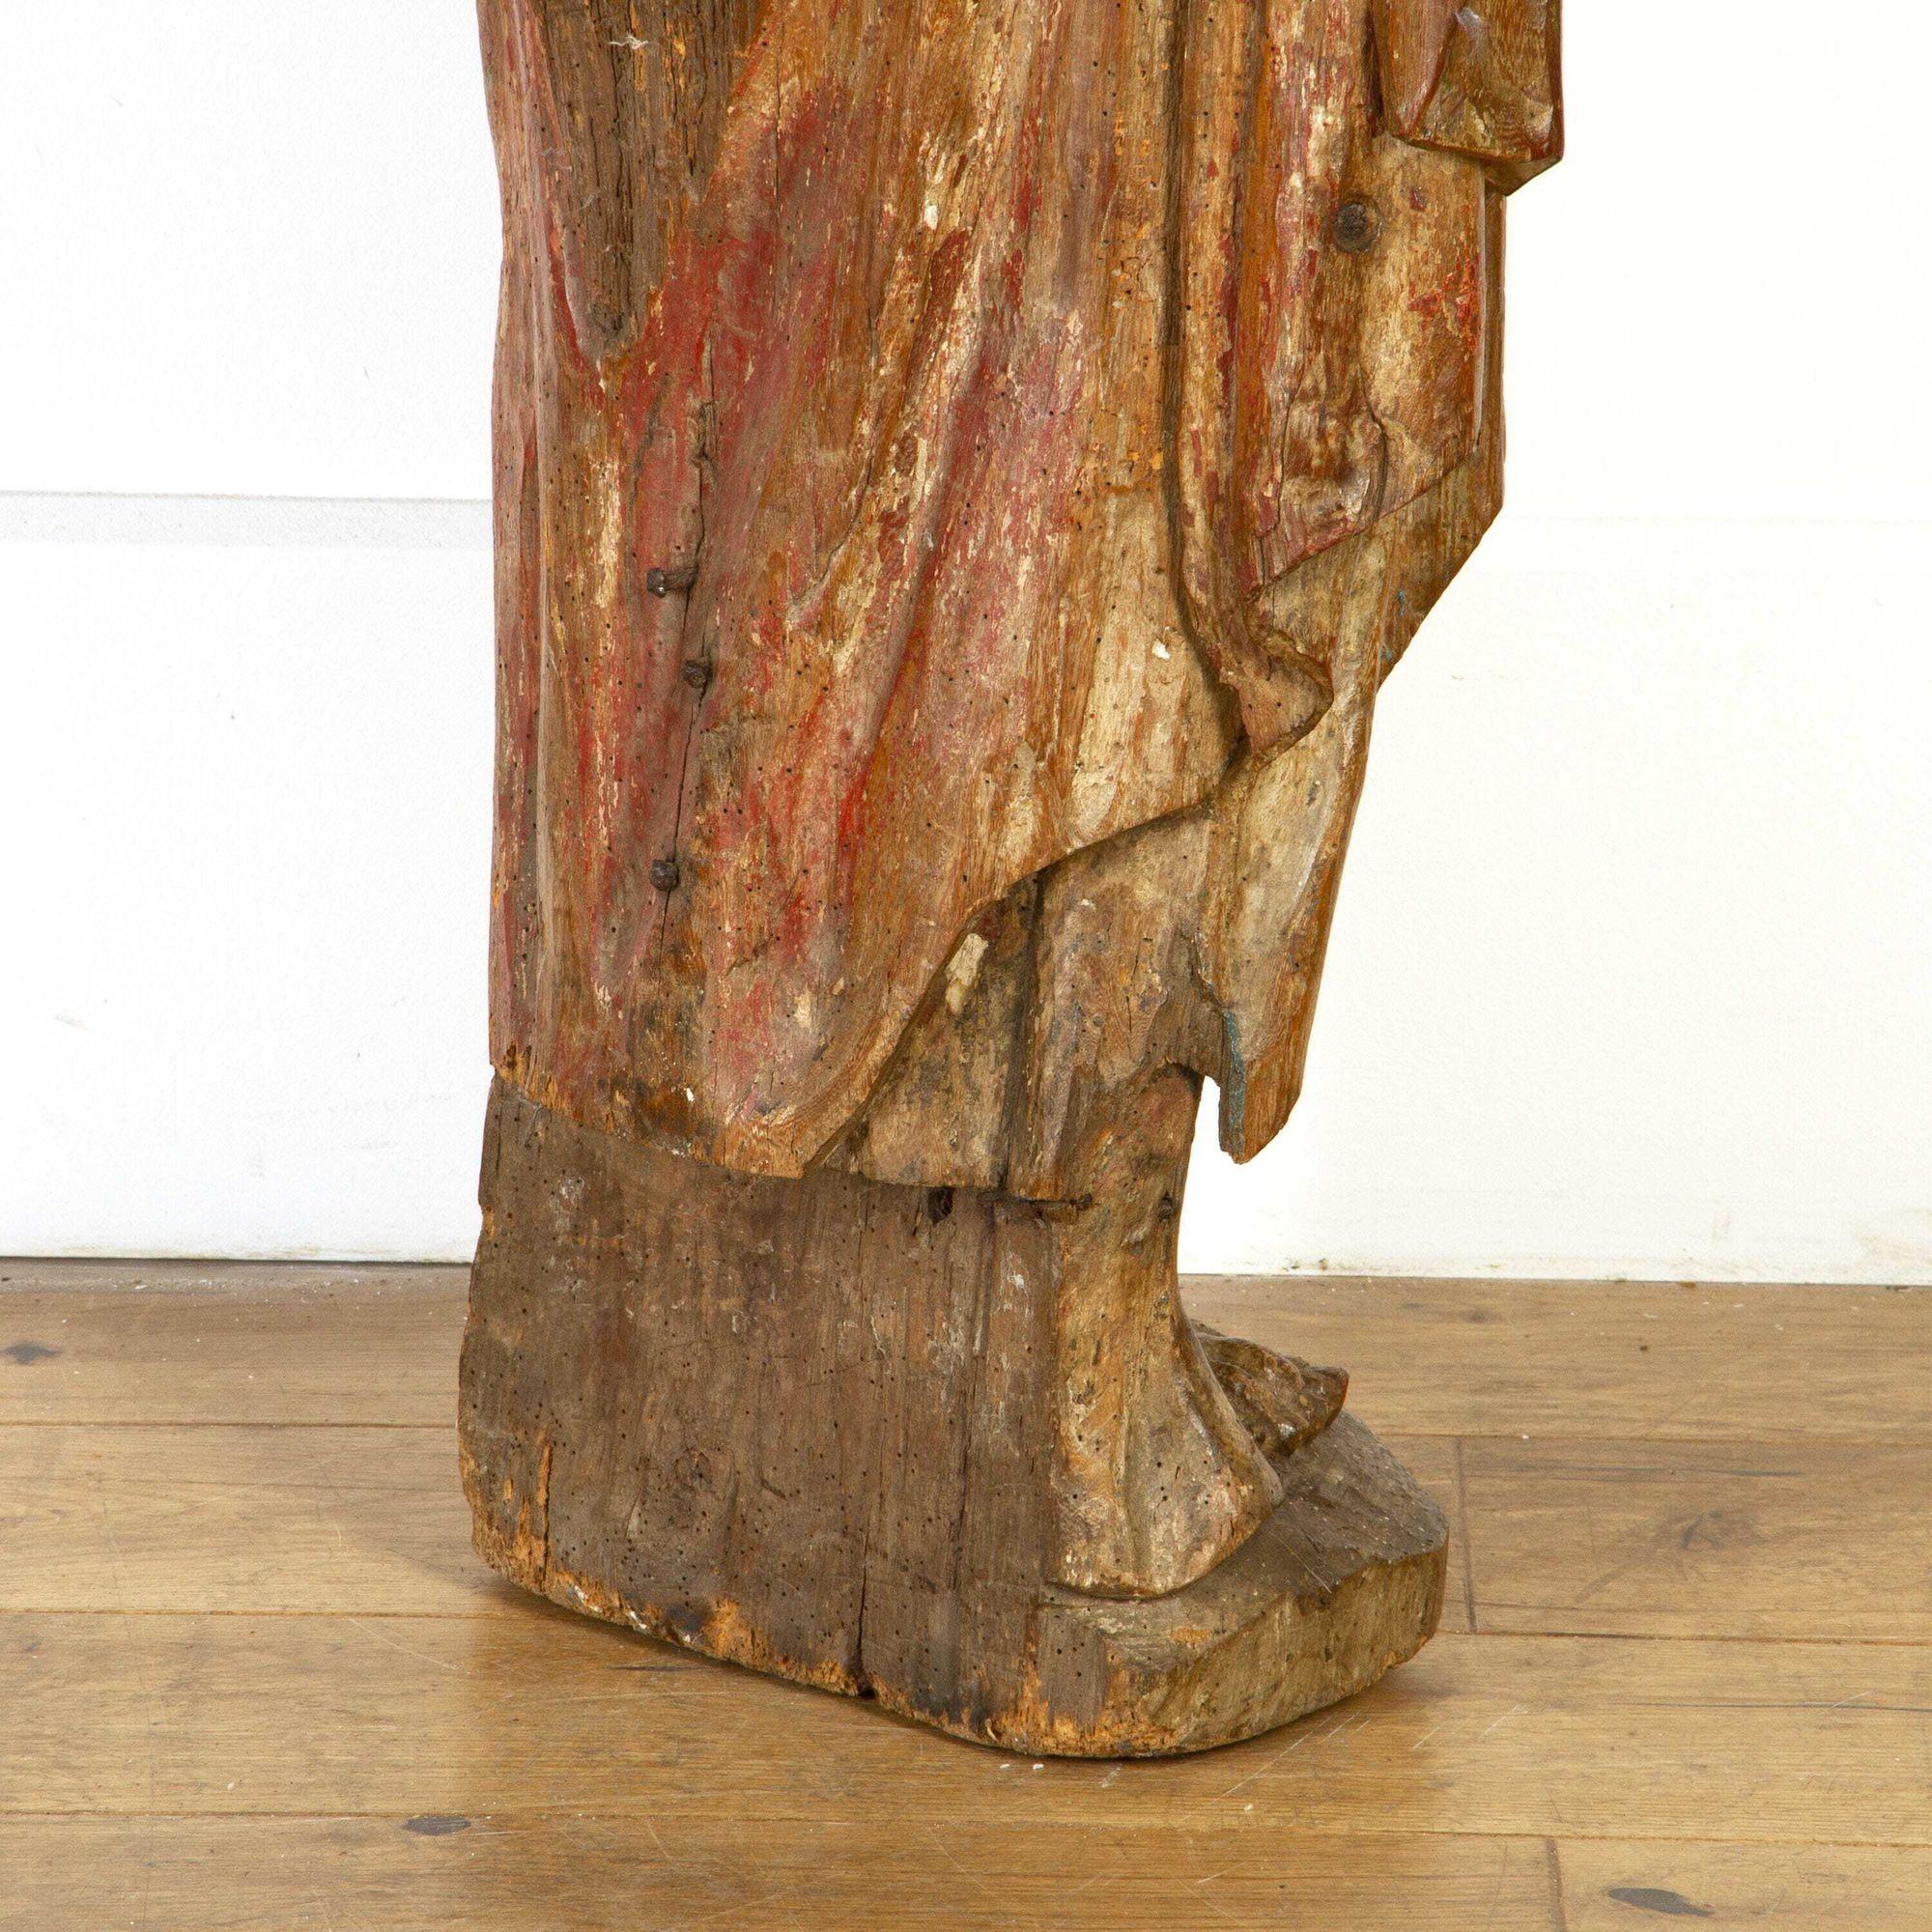 Figure de saint sculptée d'Europe du Nord du milieu du XVIIe siècle. 
Cette statue étonnante représente un saint vêtu d'une robe et portant la main sur son cœur. Cette figure est autoportante et se tient dans une position penchée, ce qui la met en